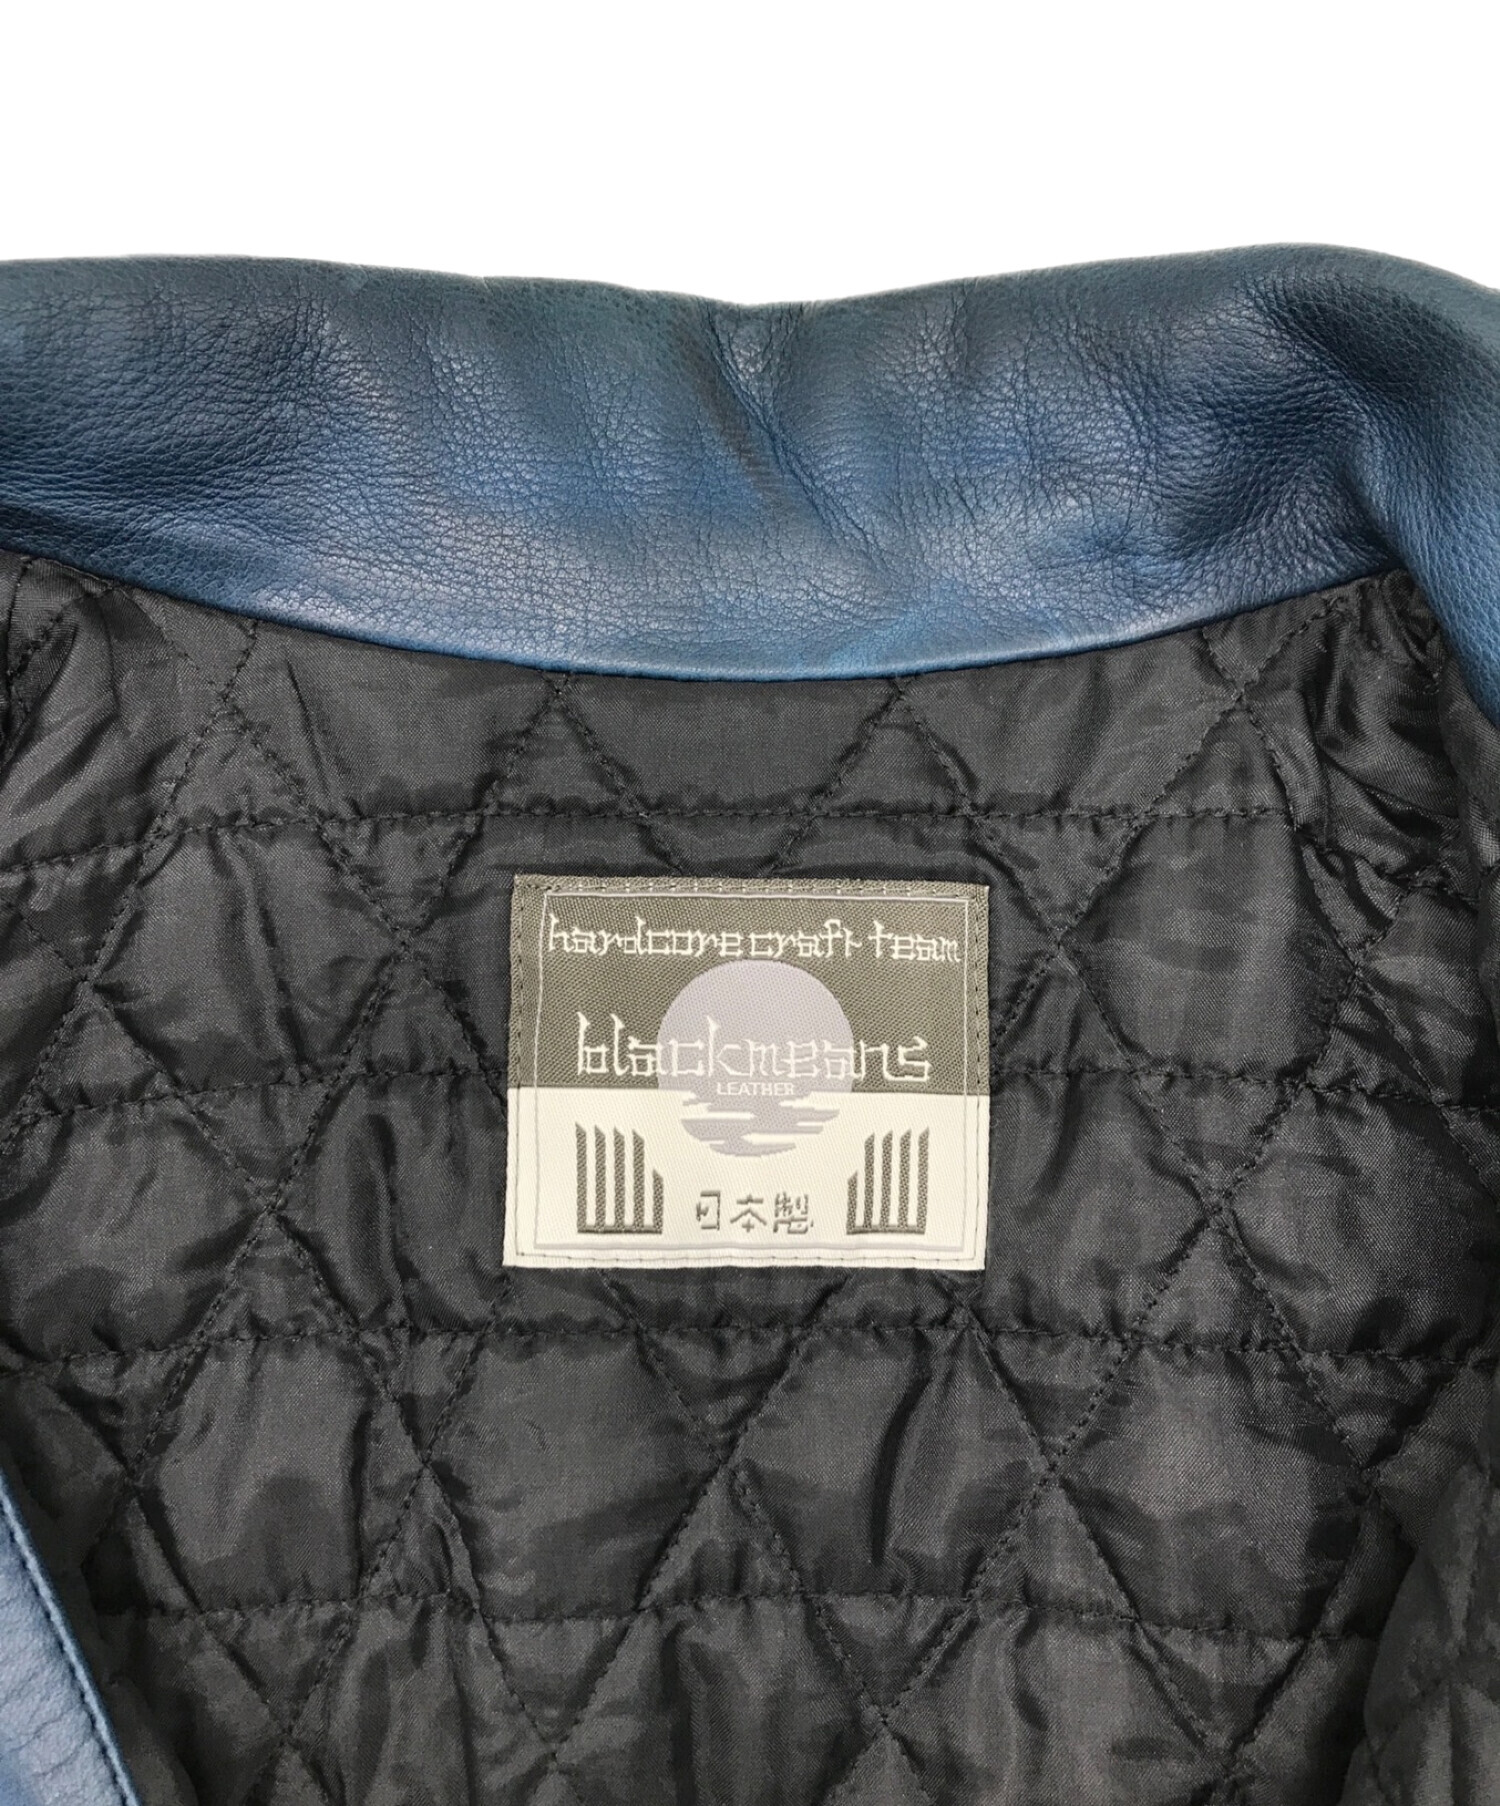 blackmeans (ブラックミーンズ) スパイクスタッズライダースジャケット ブルー サイズ:2